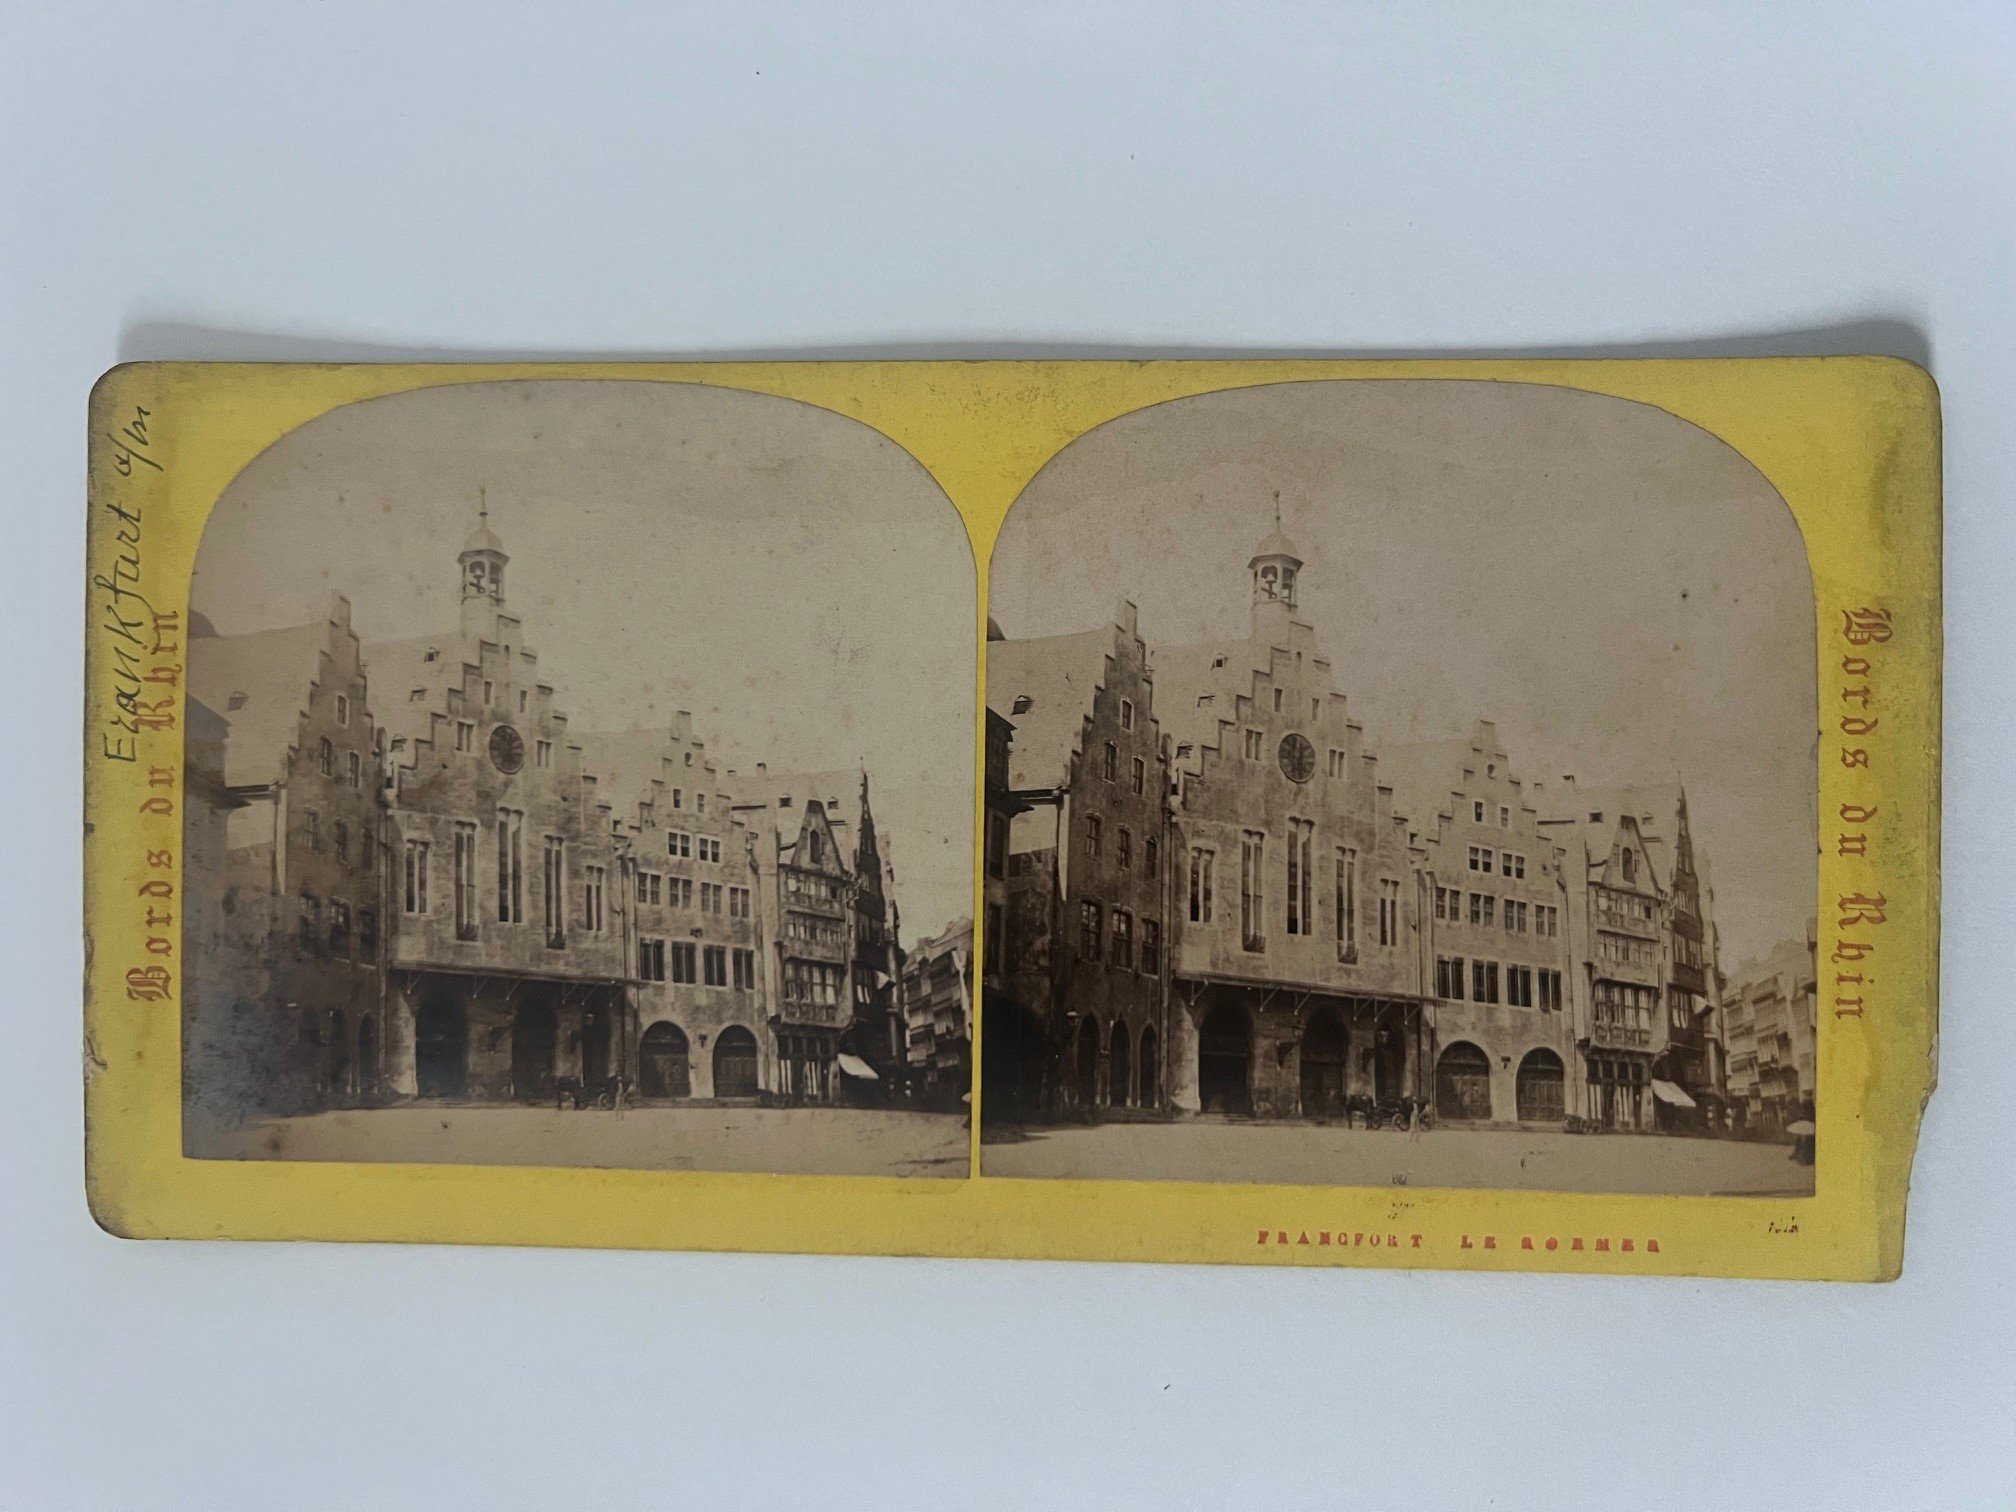 Stereobild, Unbekannter Fotograf, Frankfurt, Der Römer, ca. 1873. (Taunus-Rhein-Main - Regionalgeschichtliche Sammlung Dr. Stefan Naas CC BY-NC-SA)